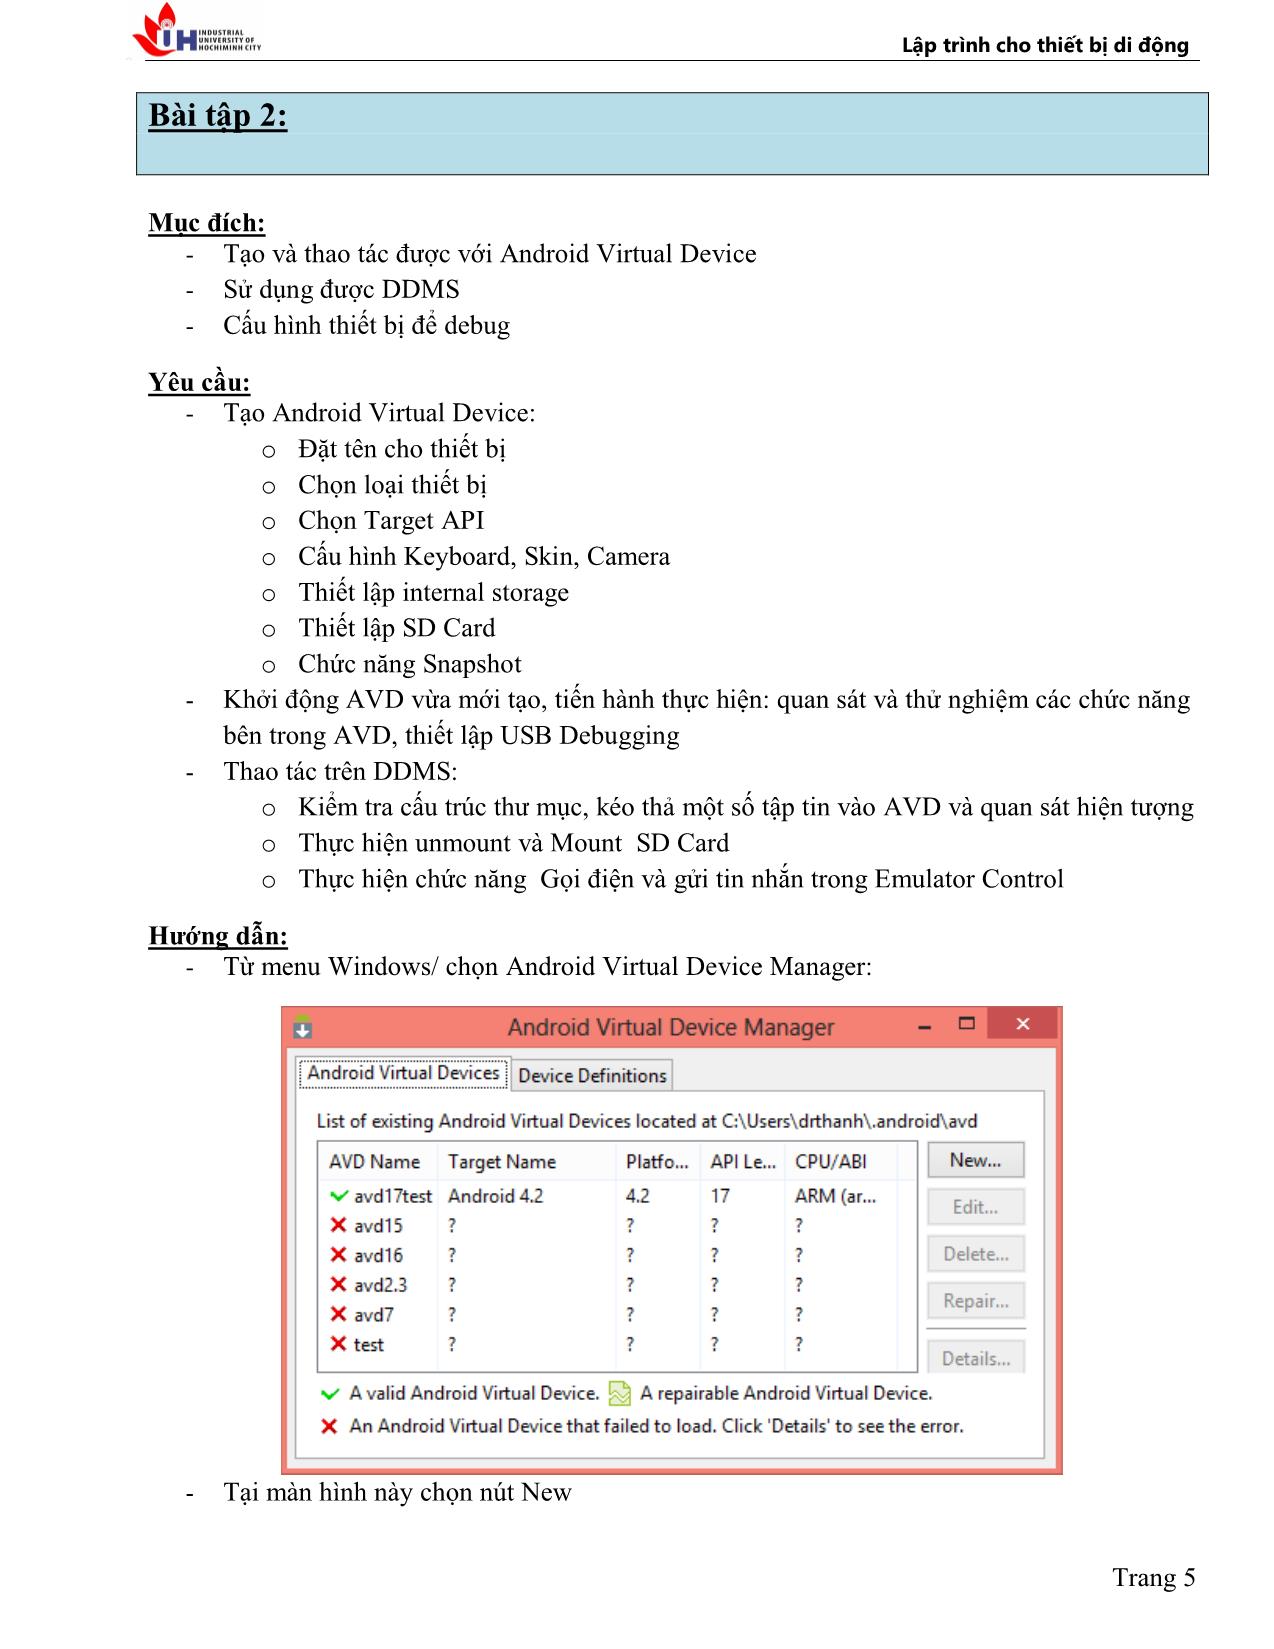 Hướng dẫn thực hành lập trình cho thiết bị di động (Android OS) trang 5